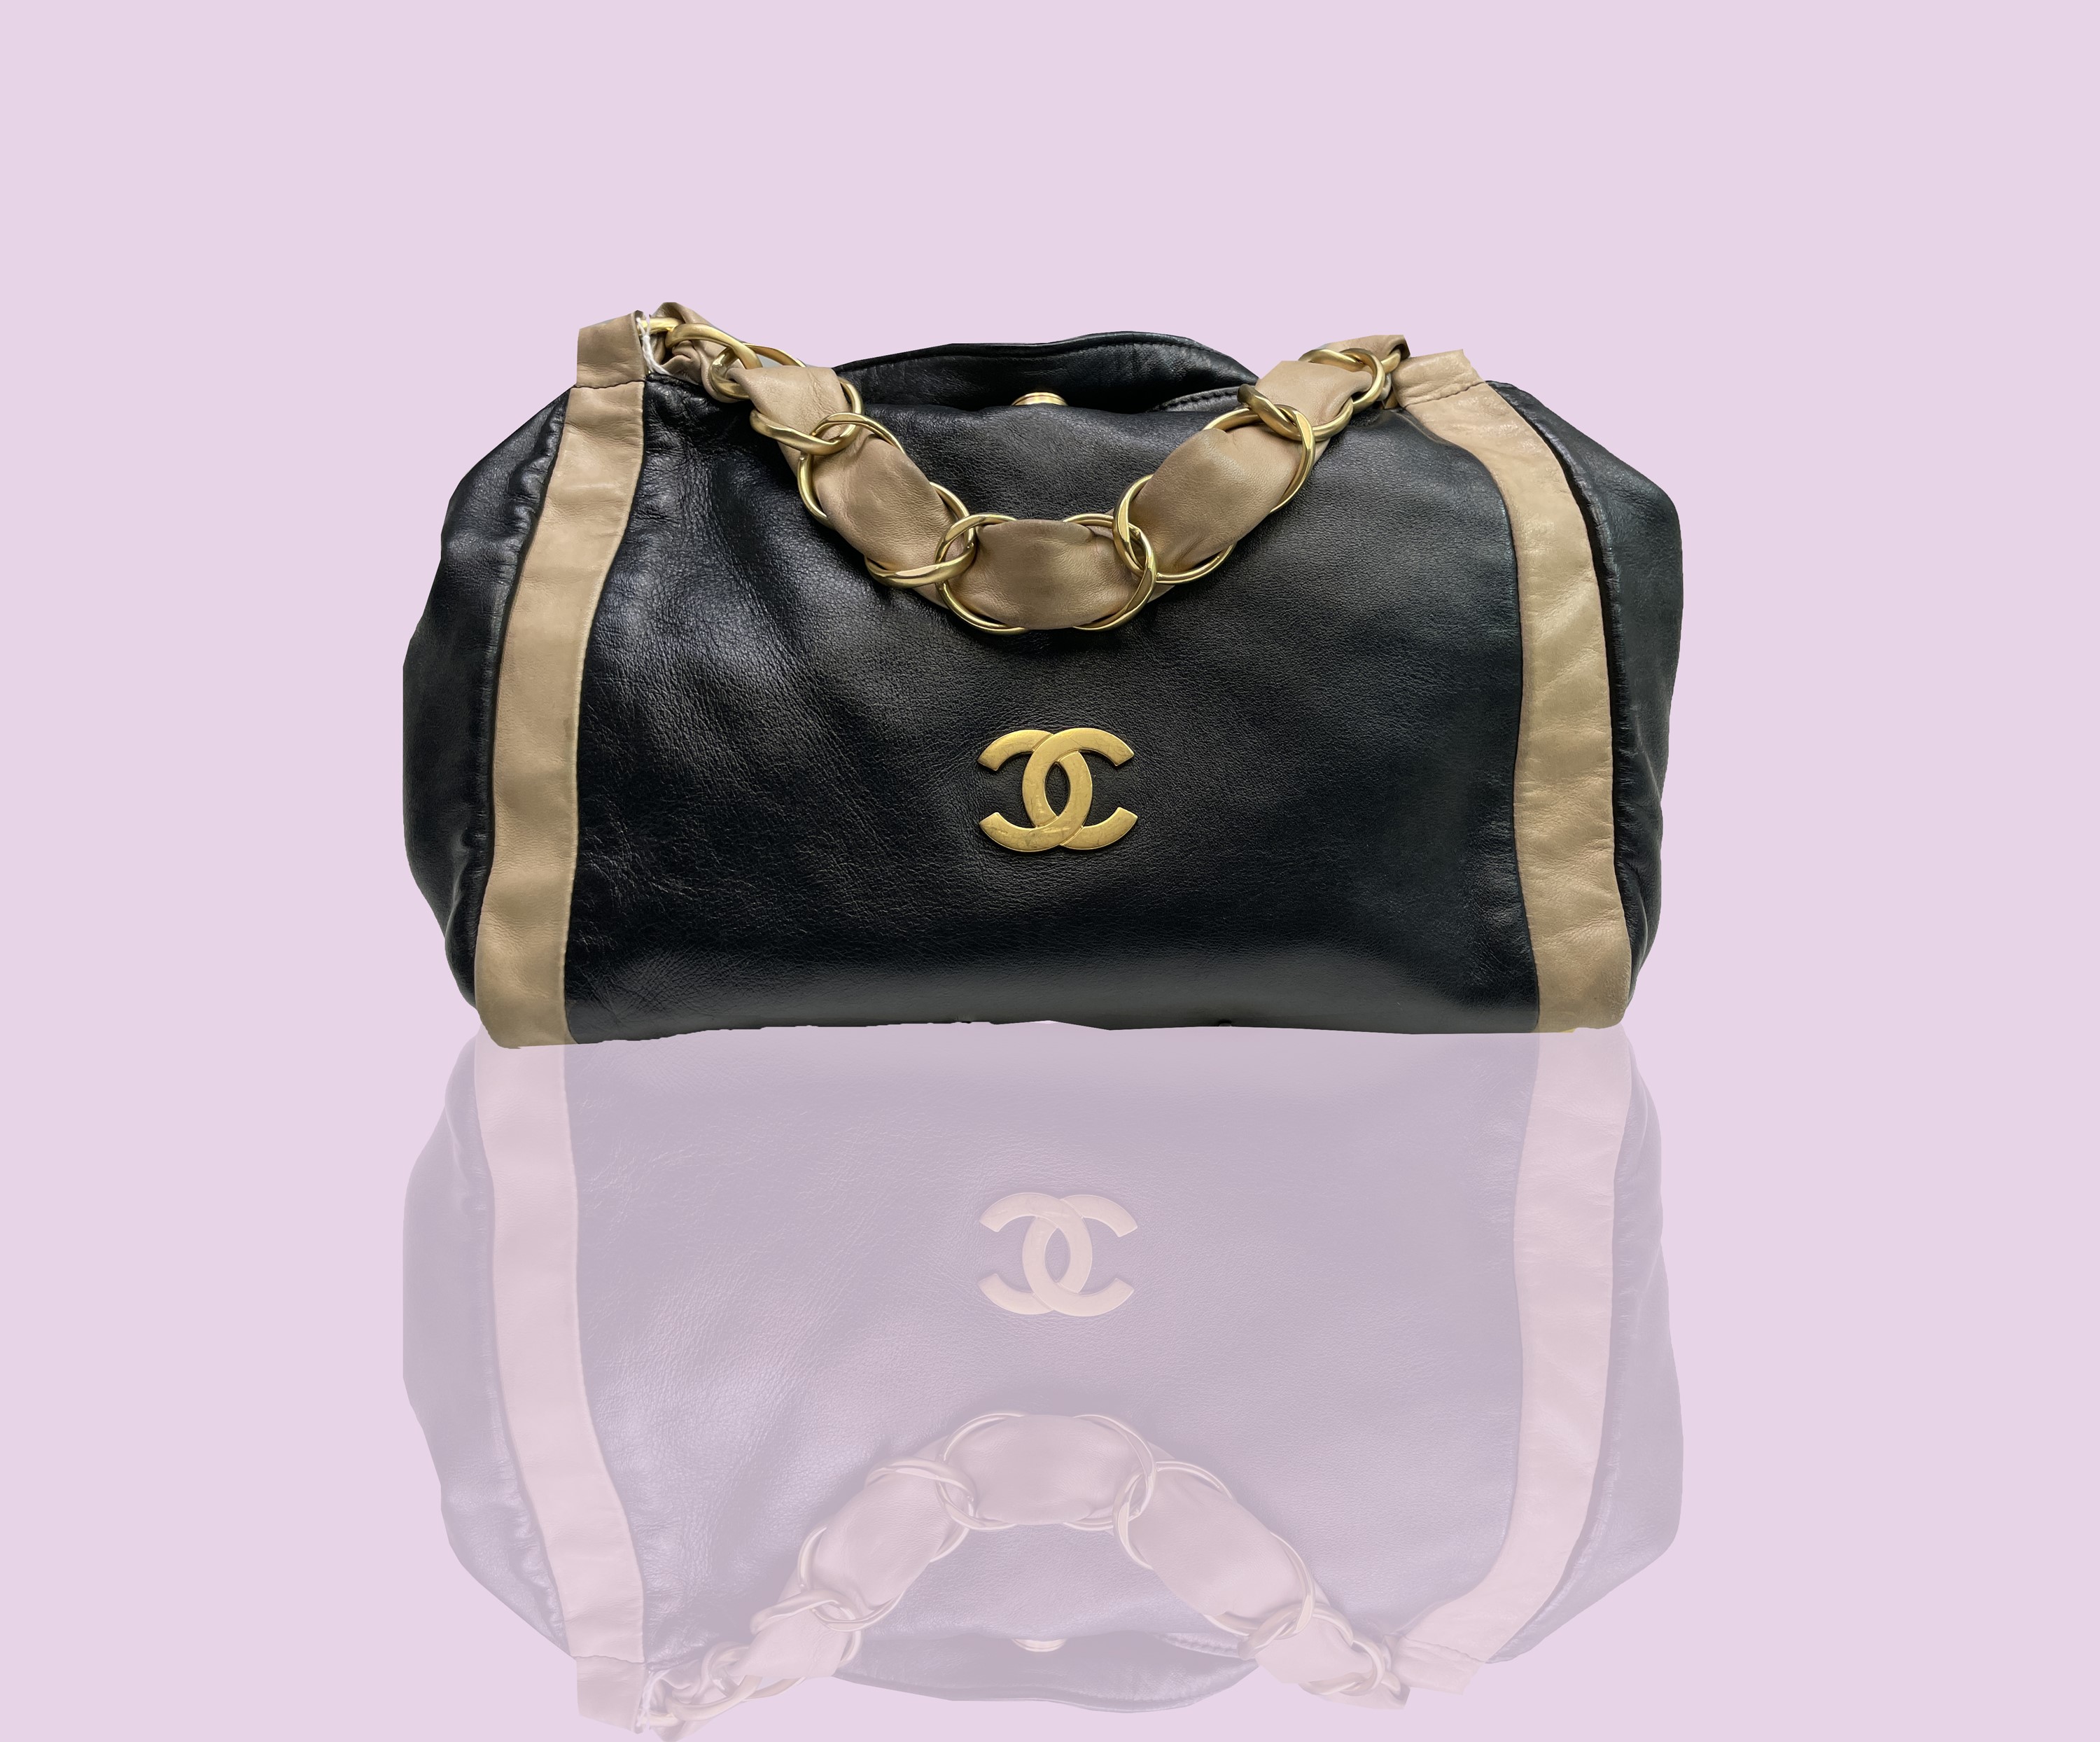 Lot 2829 - Chanel. Vintage bag, Olsen model. Black